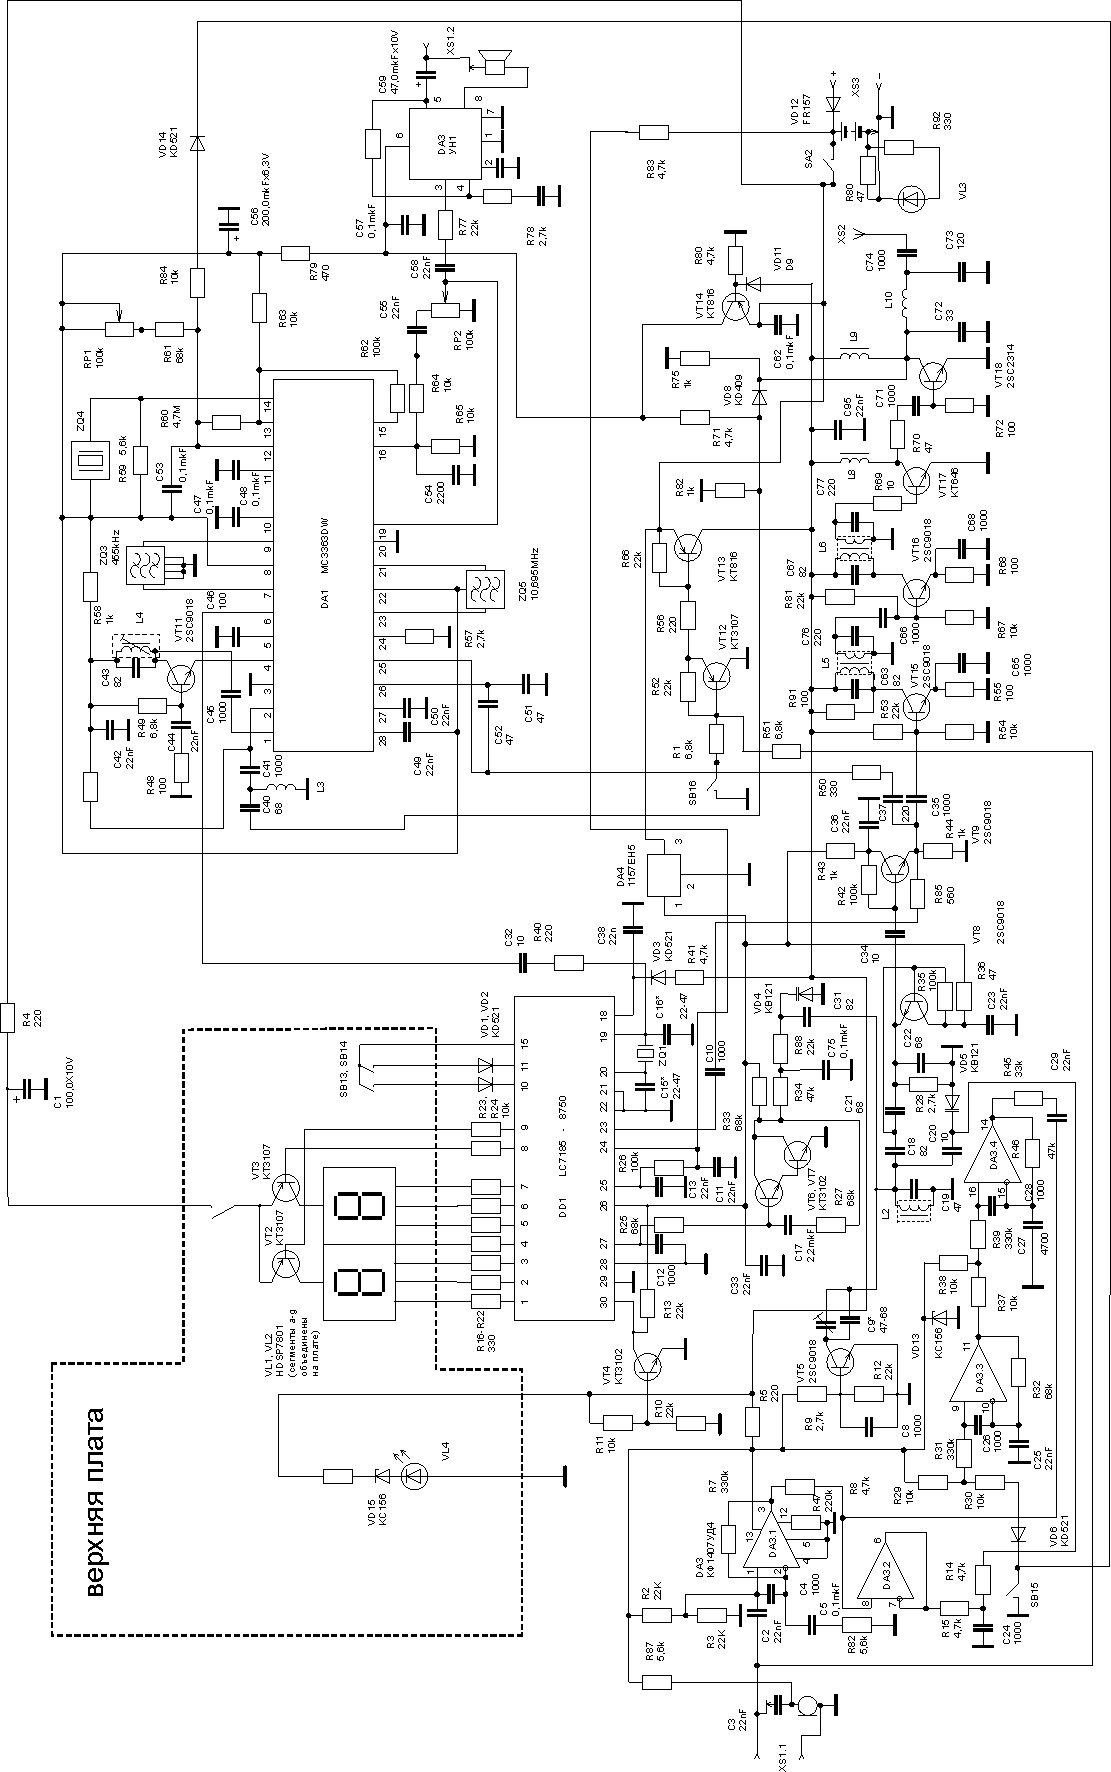 Схема портативной 40-канальной cb радиостанции Пилот-40